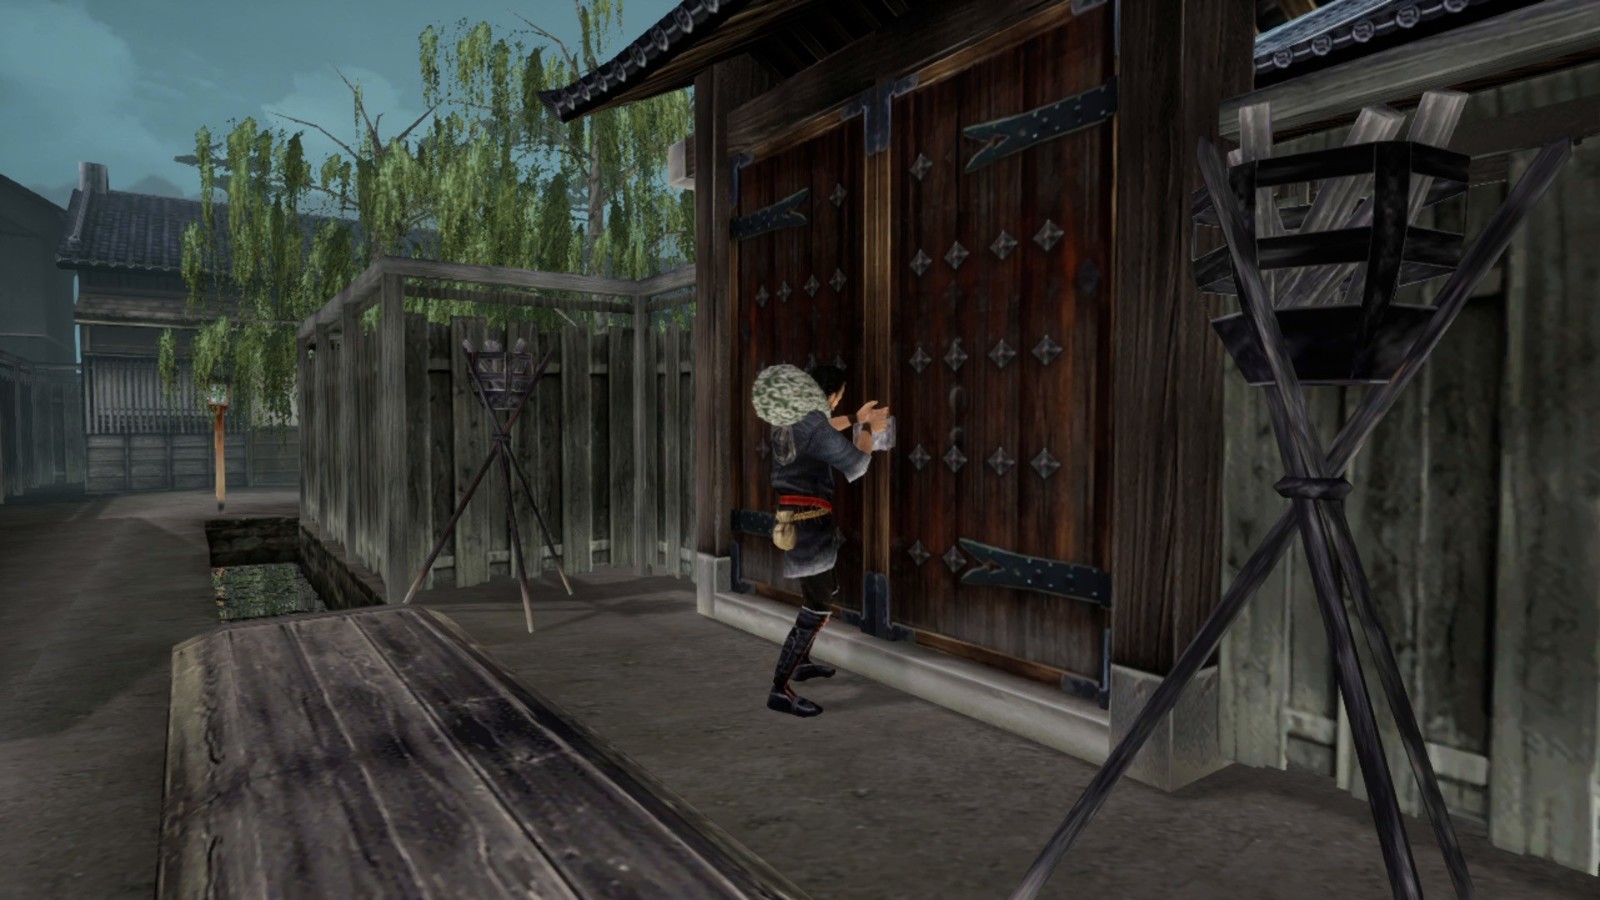 潜行动作游戏《神技
：盗来》现已在Steam发售 支持繁体中文